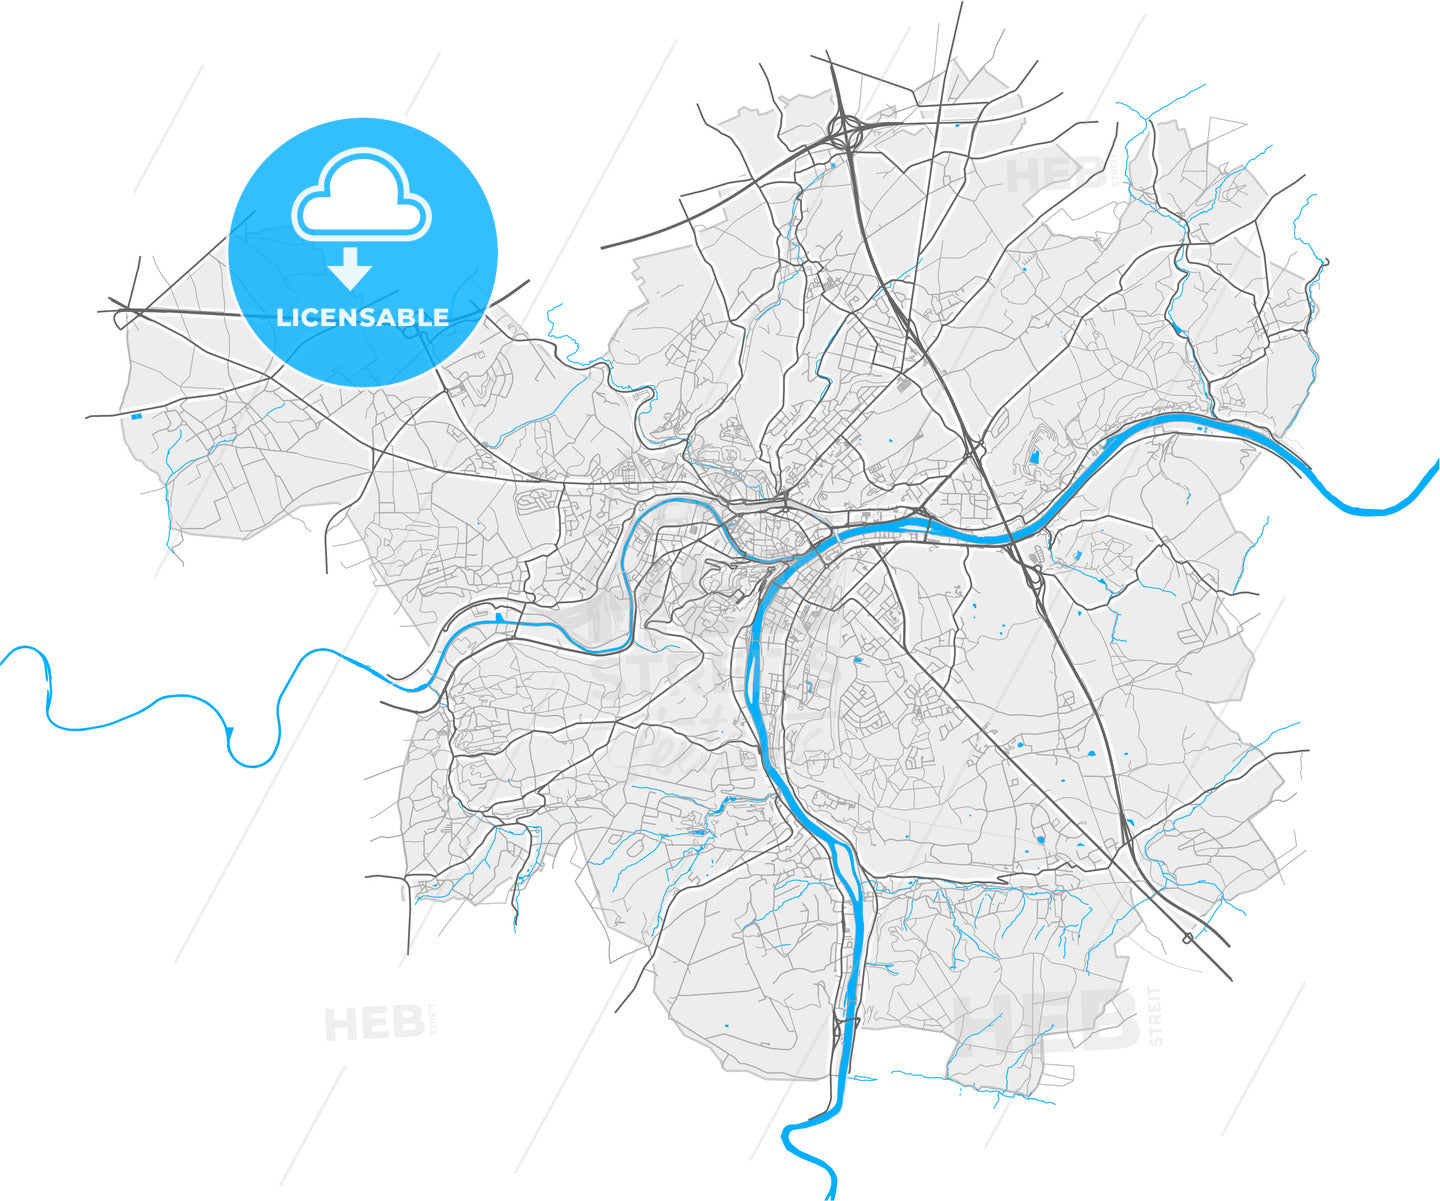 Namur, Namur, Belgium, high quality vector map